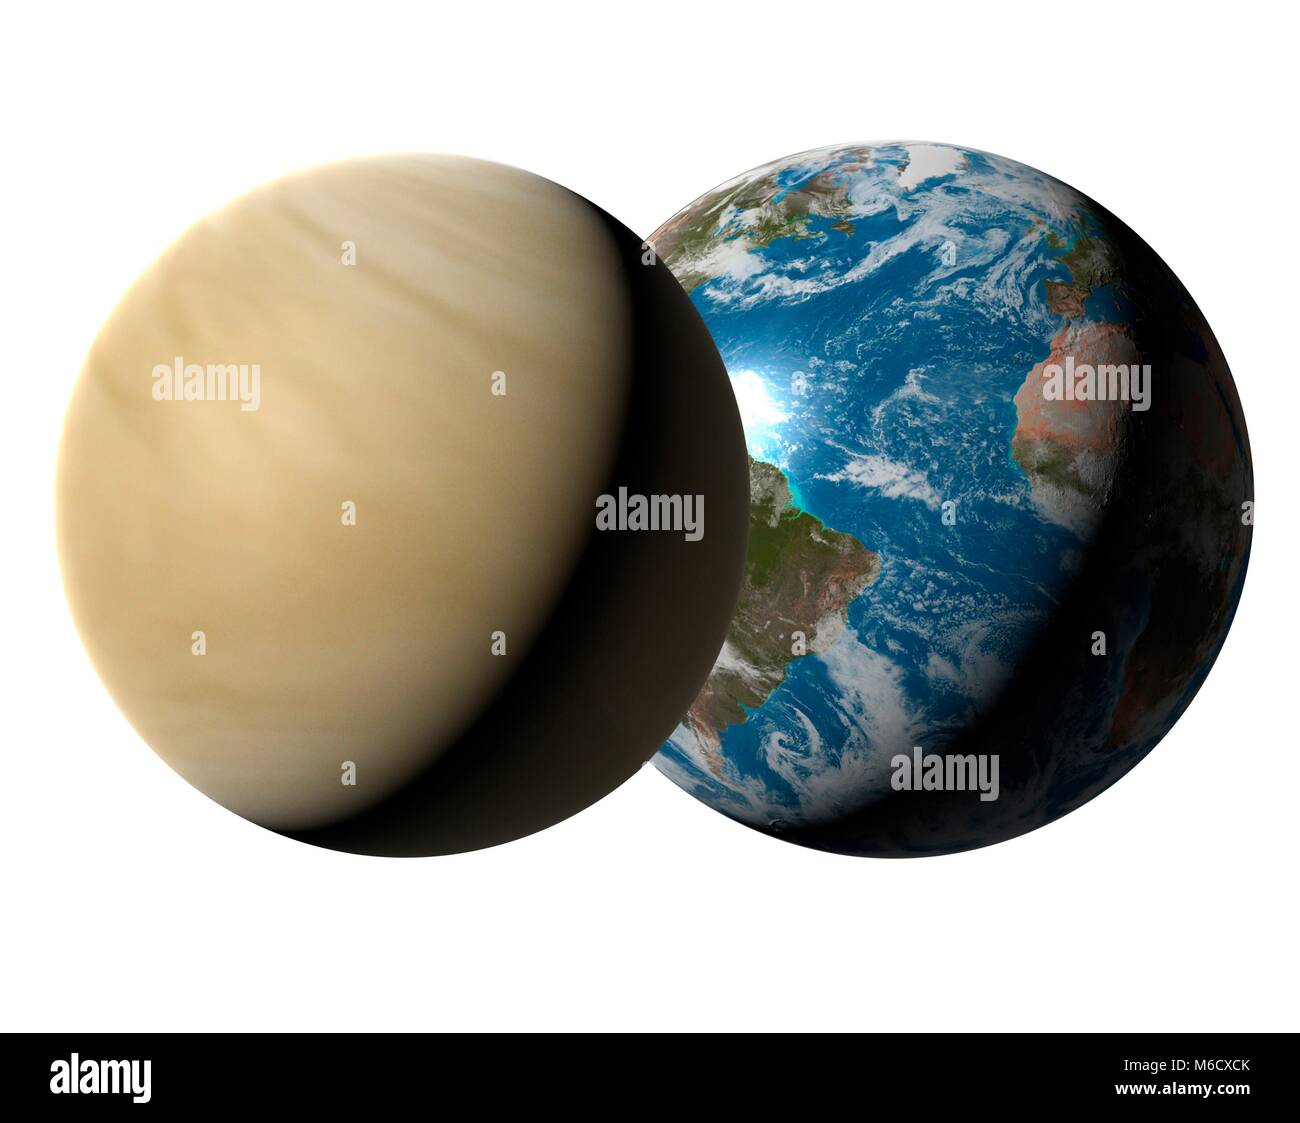 Bild vergleichen von der Größe der Erde (rechts) mit den Planeten Venus. Venus ist der zweite Planet von der Sonne aus, mit einer durchschnittlichen Entfernung von 0,72 fache der Entfernung Erde-Sonne. Es ist auch der heißeste Planet (obwohl sie von der Sonne weiter als Quecksilber) wegen seiner dichten Atmosphäre von Kohlendioxid eine runaway Treibhauseffekt geschaffen hat. Blei, Zinn und Zink würde alle Schmelzen auf der Venus. Mit einem Durchmesser von 95 %, die der Erde, Venus ist 6. größte Planet des Sonnensystems. Stockfoto